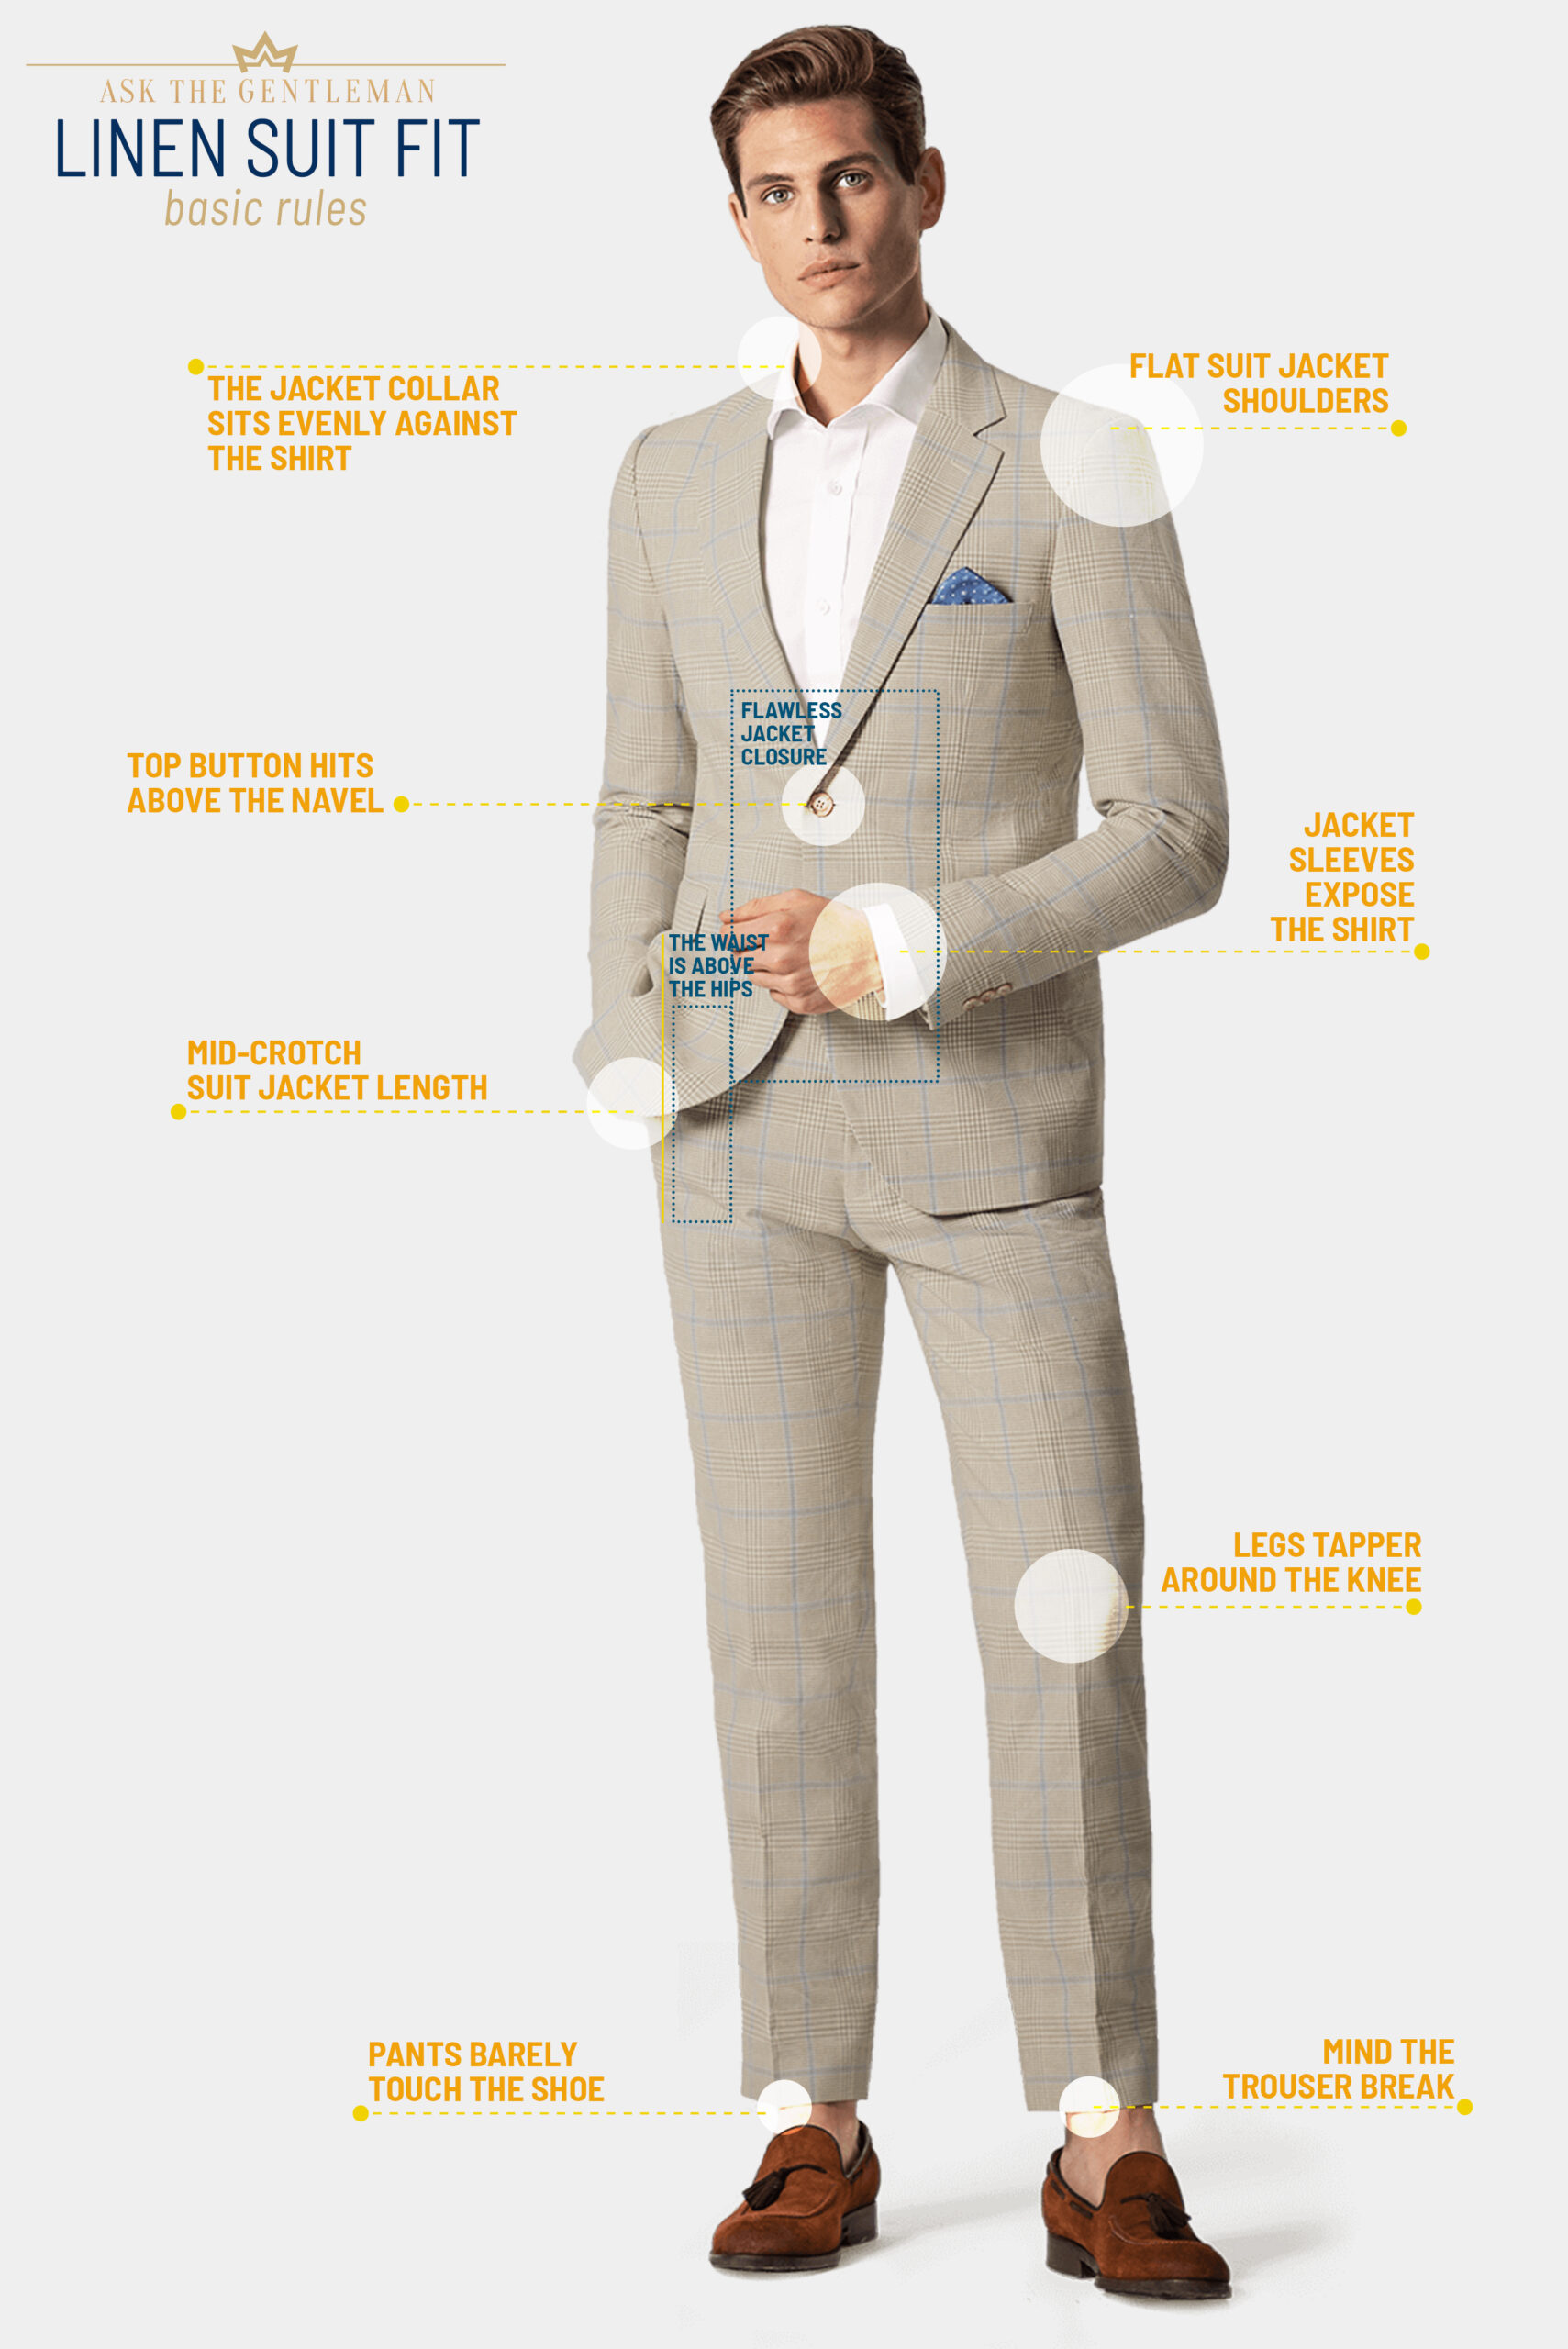 How should a linen suit fit